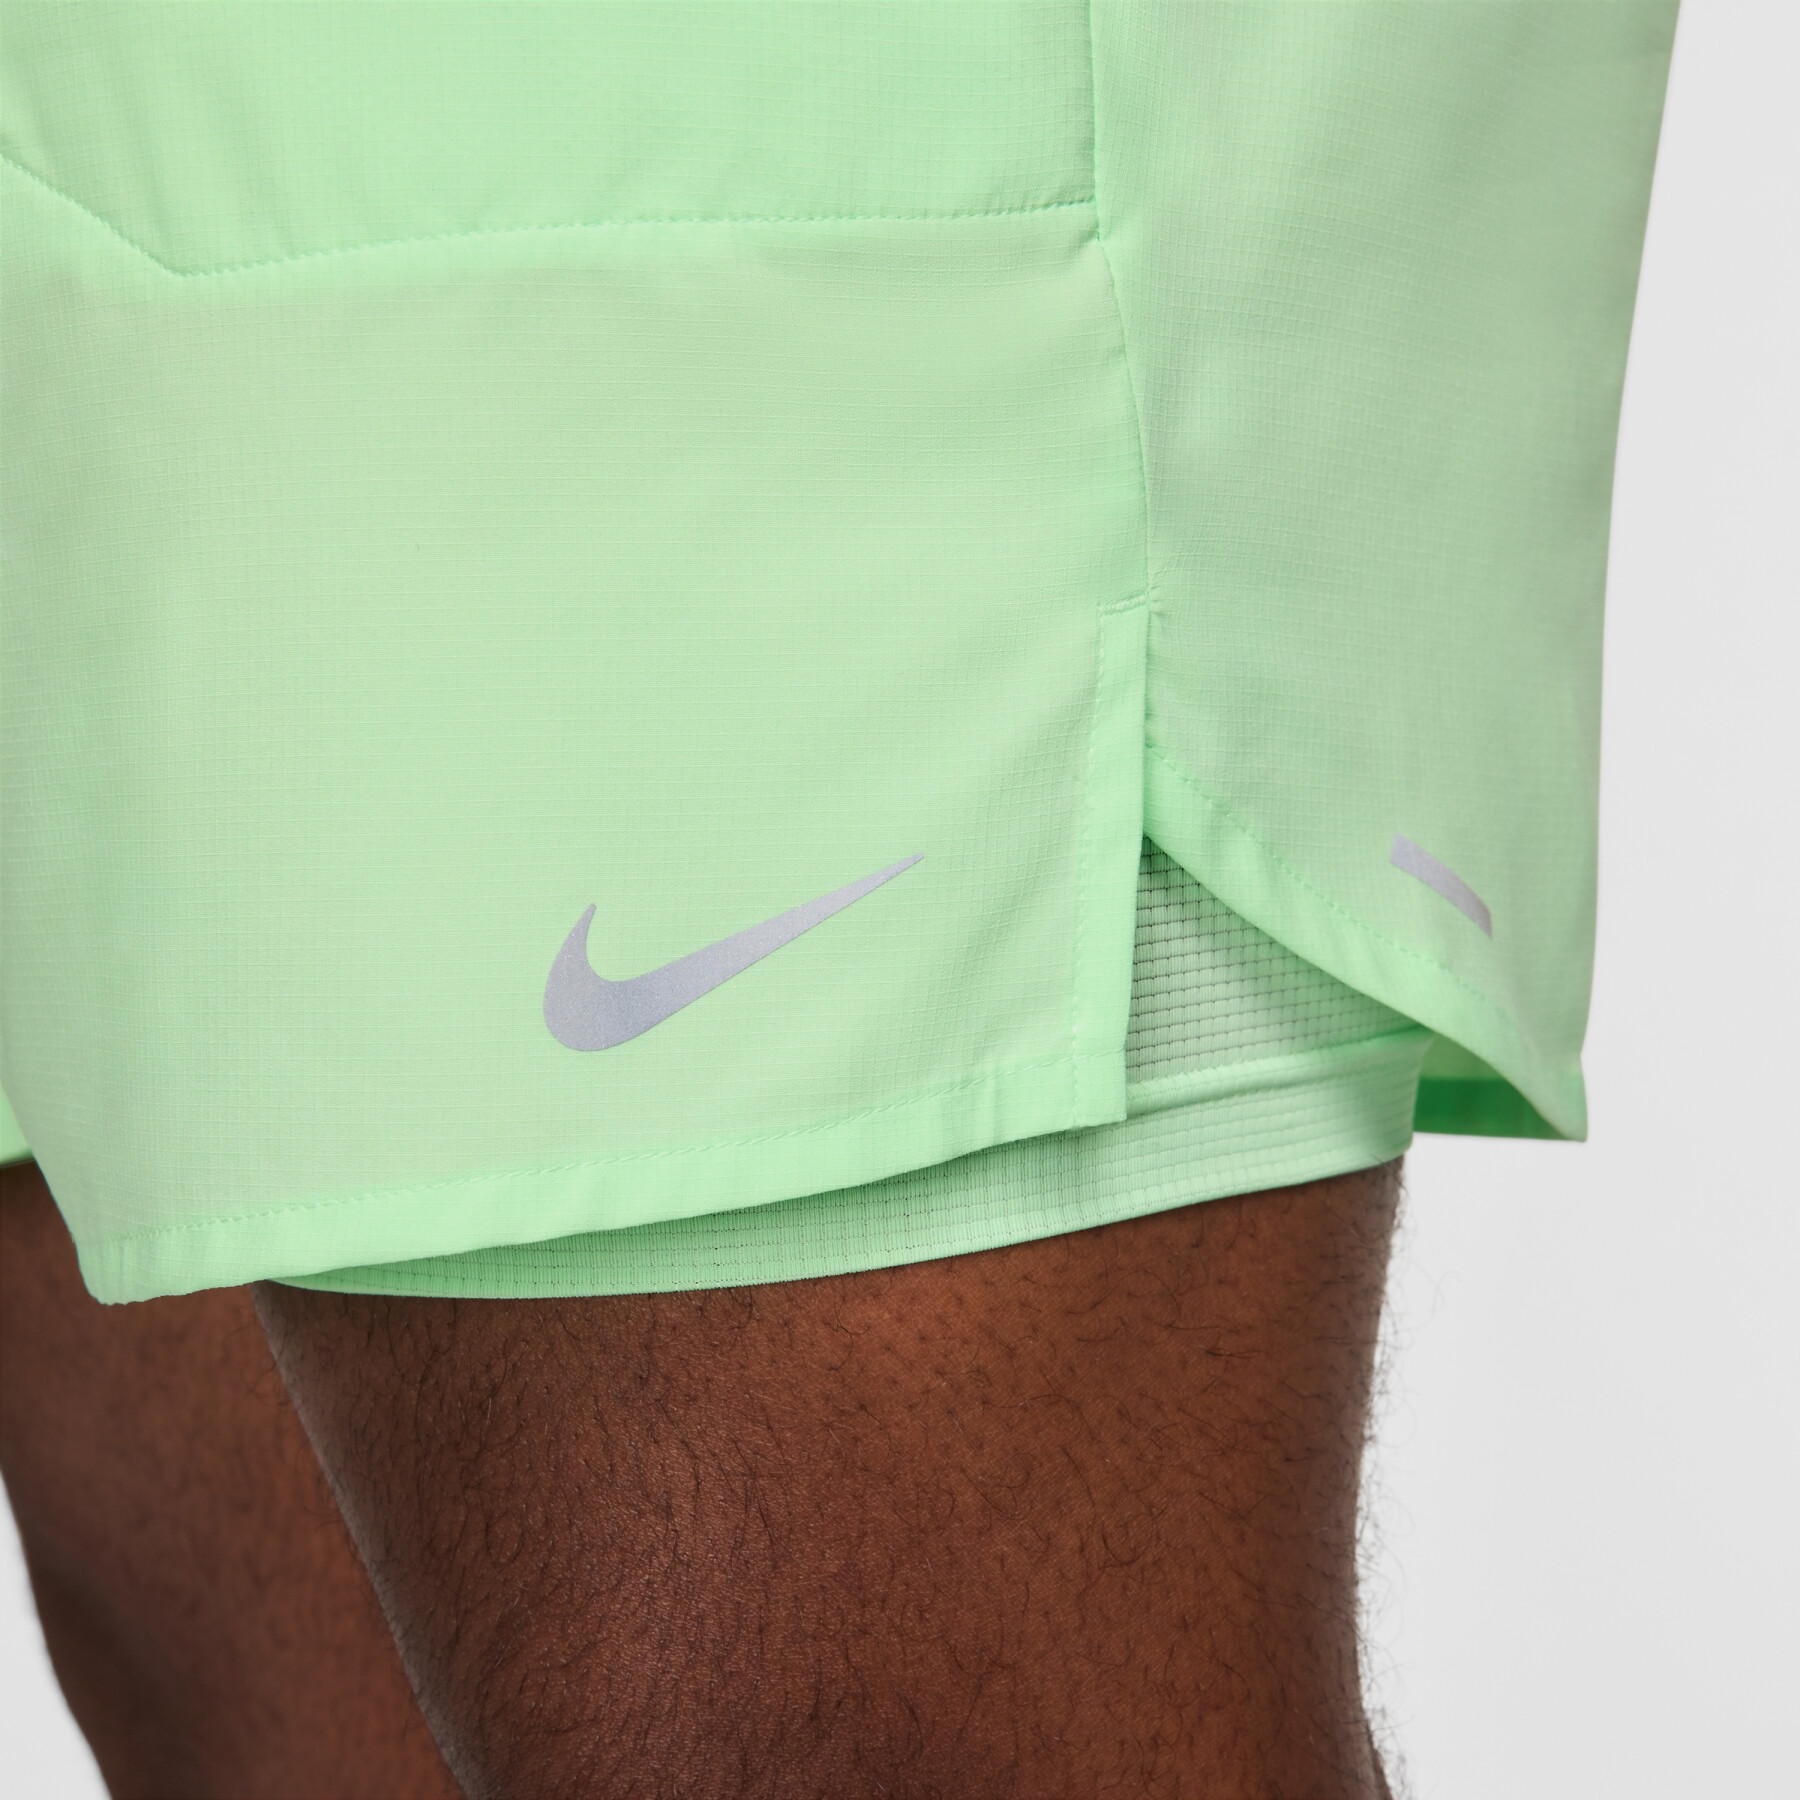 Pantalón corto Nike Stride Dri-FIT